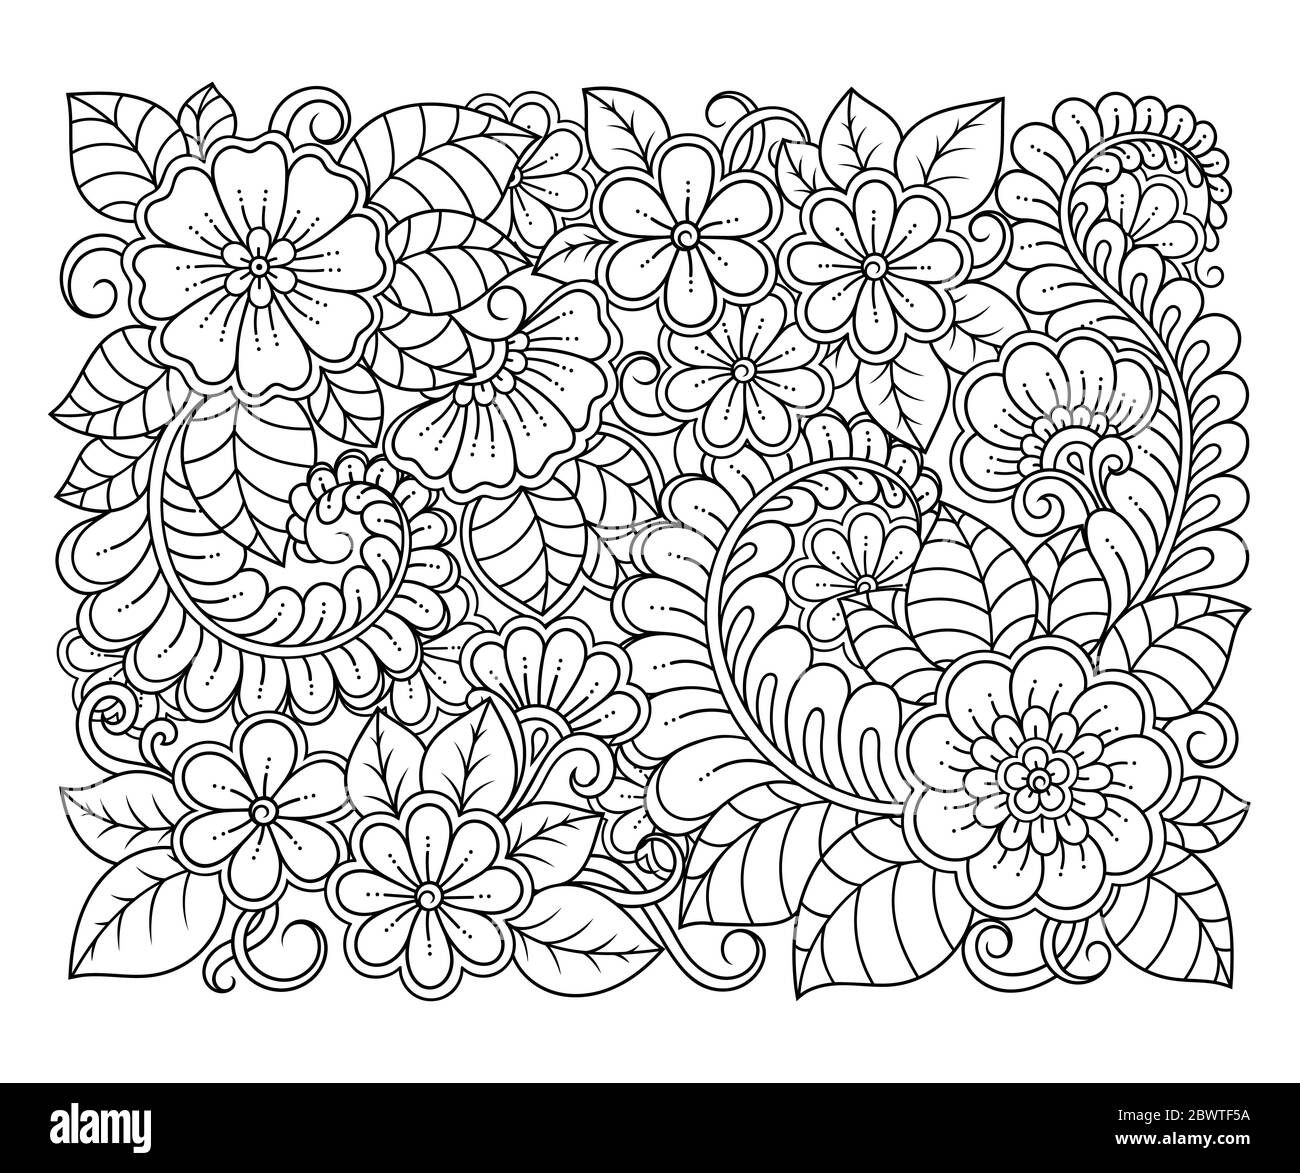 Outline quadratischen Blumenmuster im mehndi Stil zum Ausmalen Buchseite. Antistress für Erwachsene und Kinder. Doodle Ornament in schwarz und weiß. Hand-dra Stockfoto